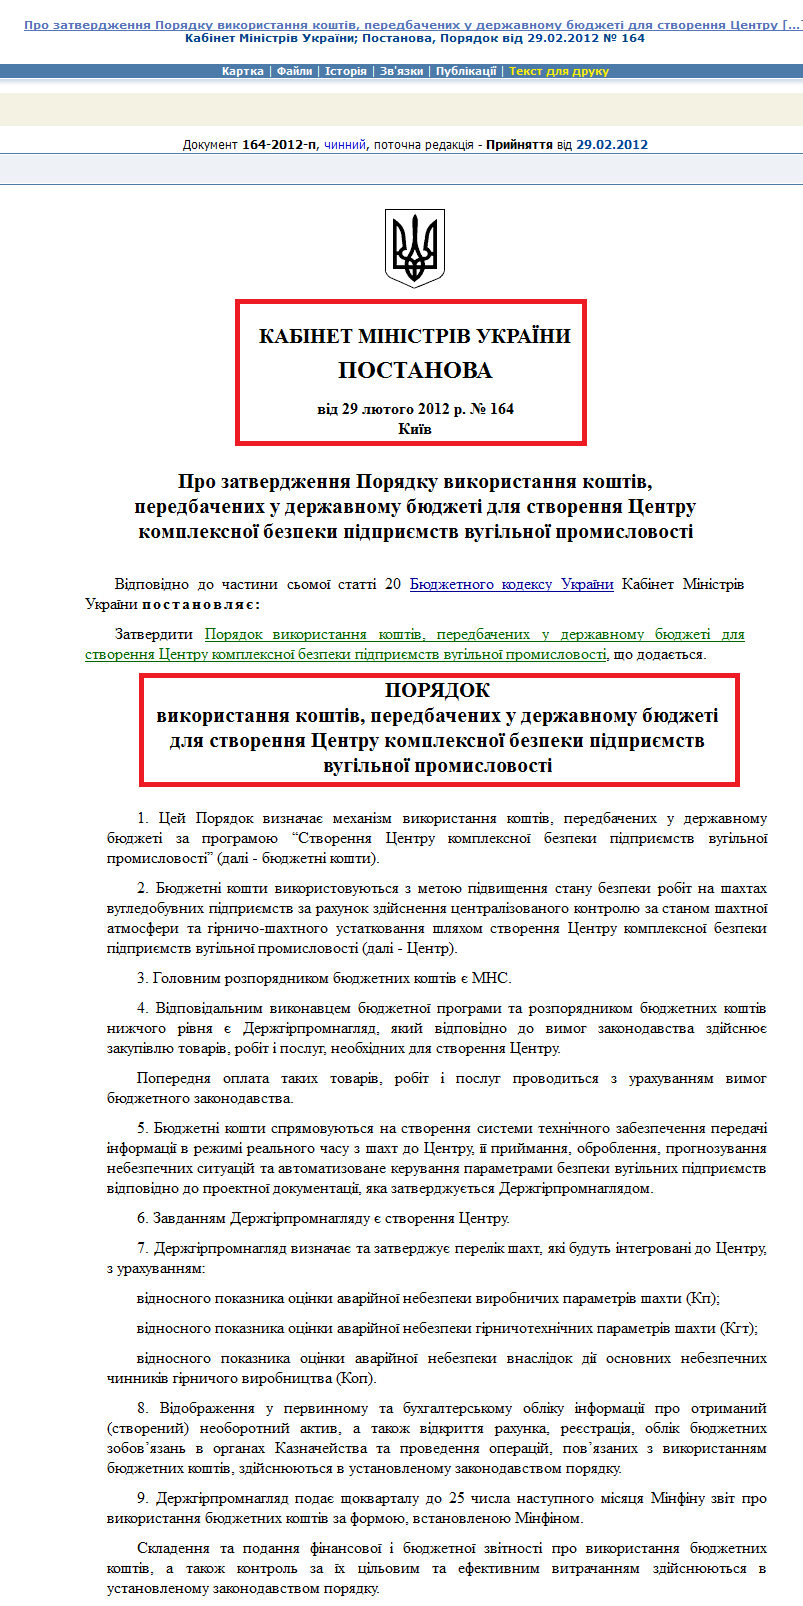 http://zakon2.rada.gov.ua/laws/show/164-2012-%D0%BF